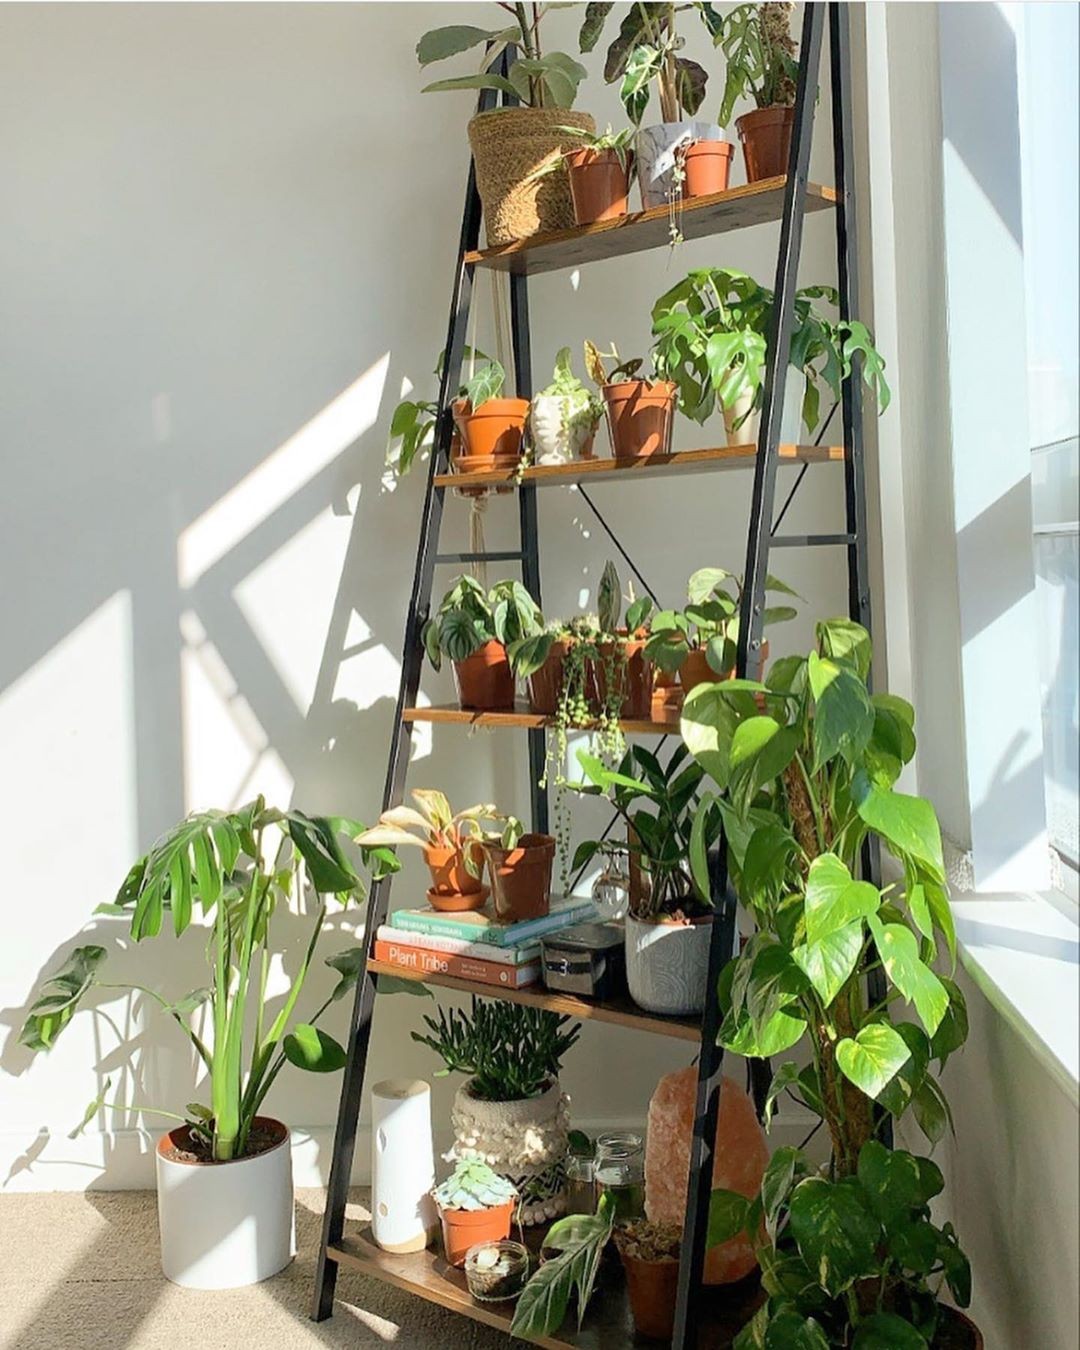 Jardim pequeno: ideias para ter plantas em casas ou apartamentos (Foto: Reprodução/Instagram/@indoor_plantopia)